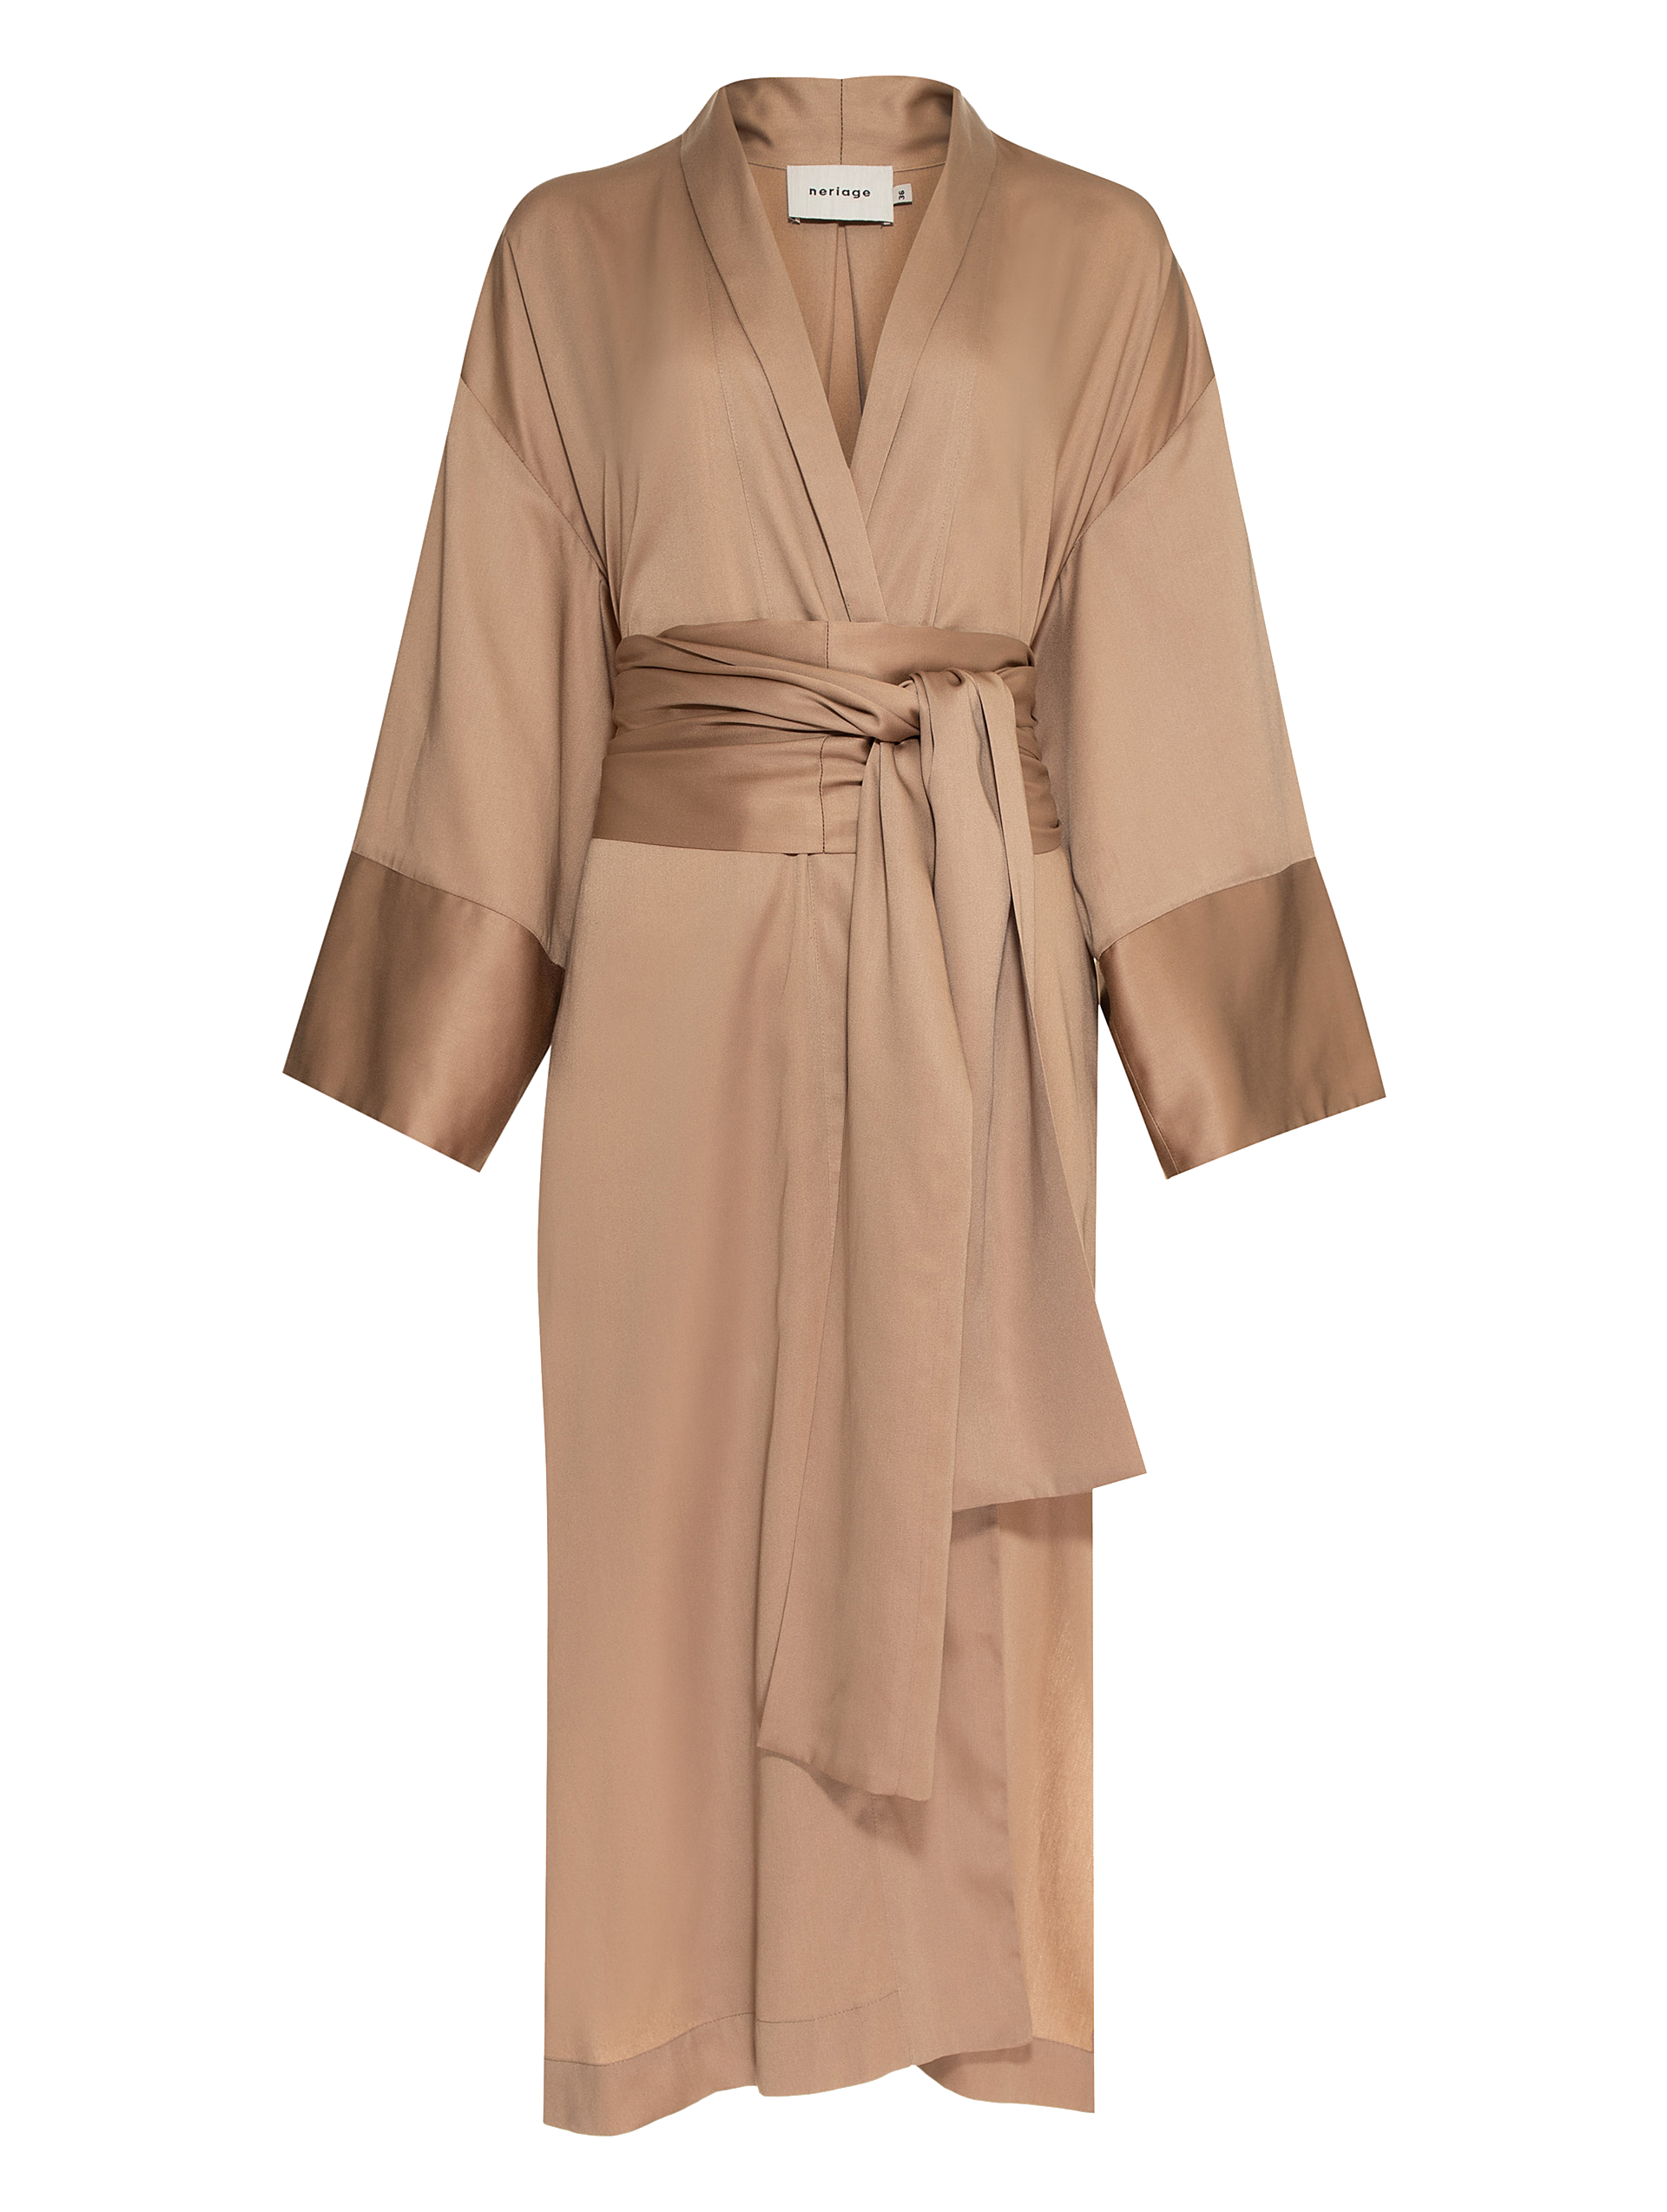 Kimono Maré Caramelo